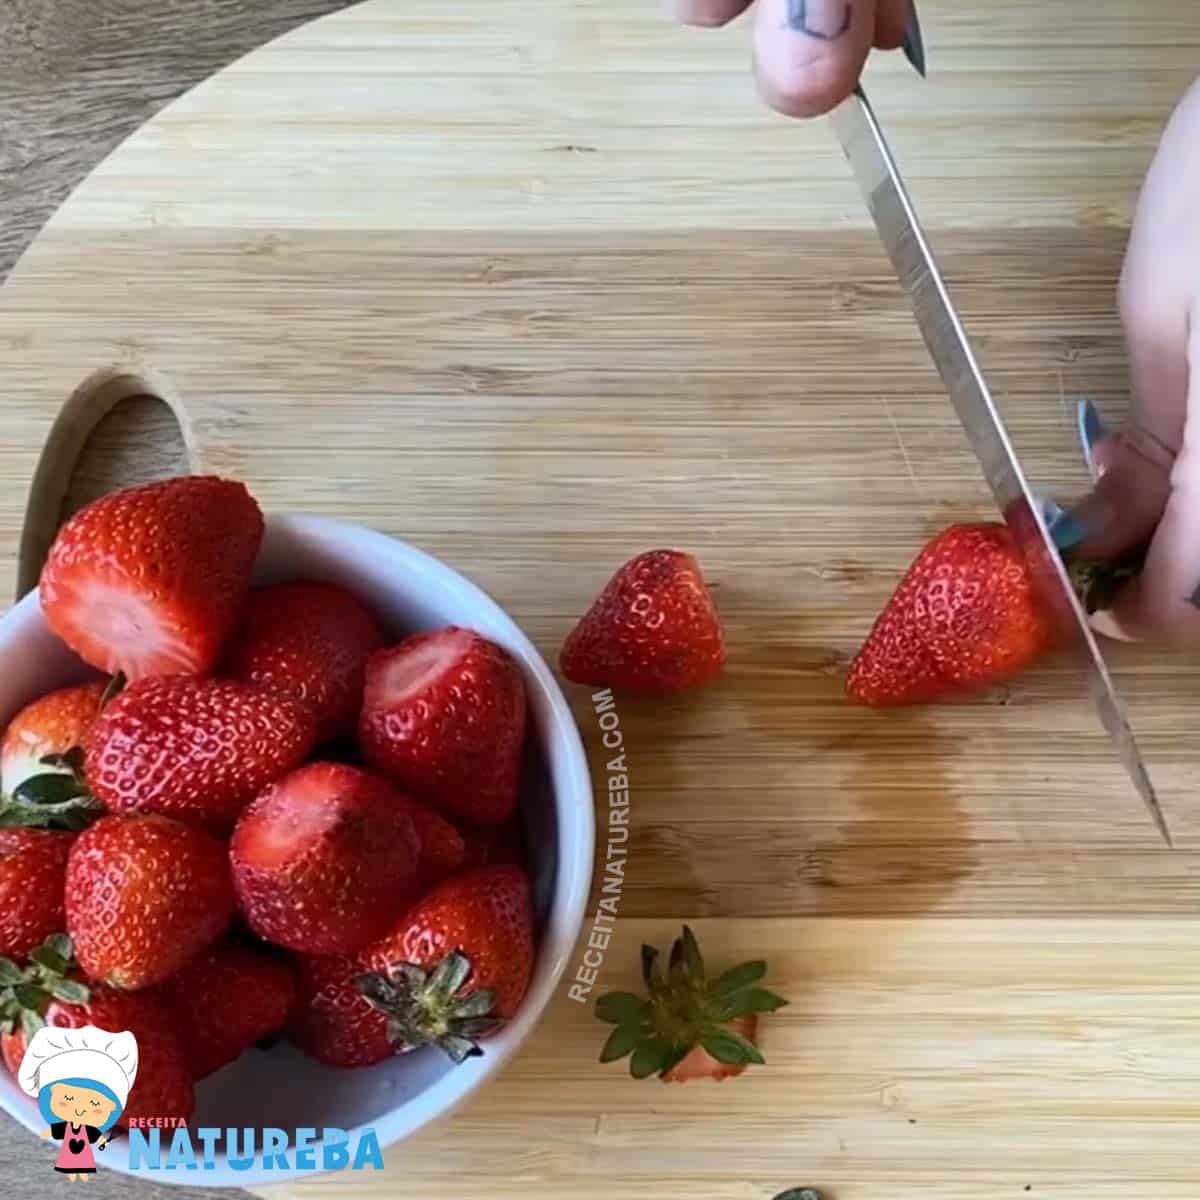 cortando os morangos